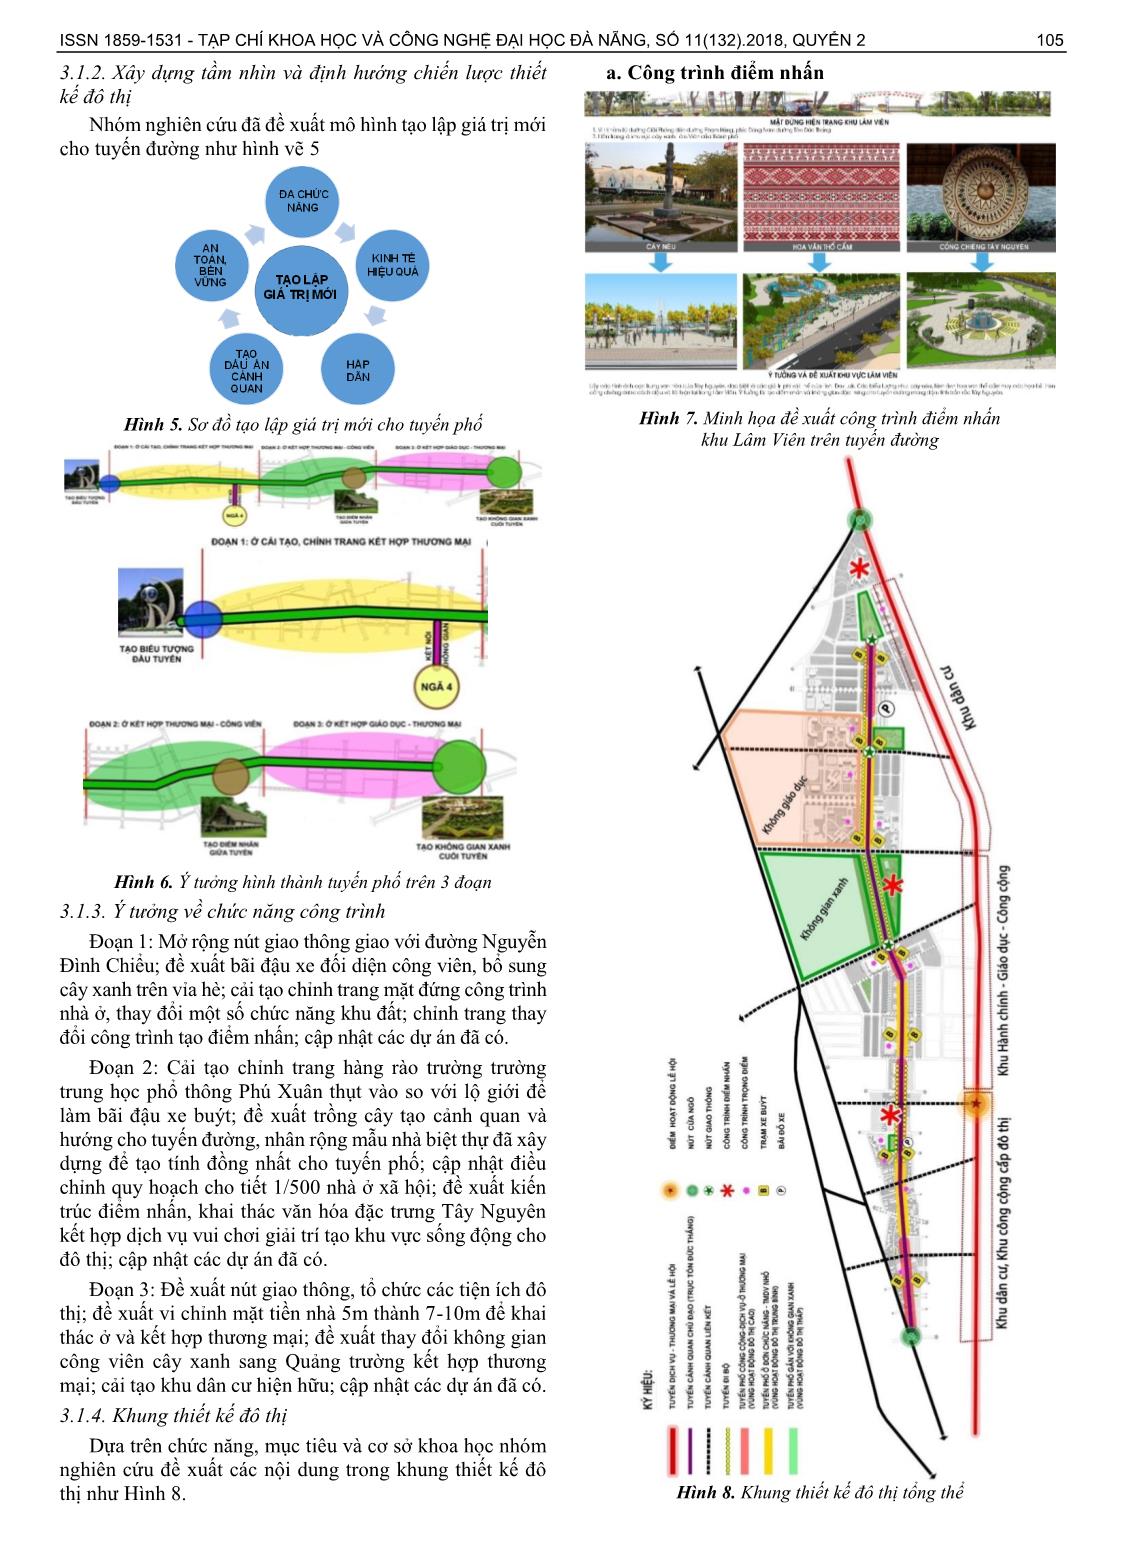 Nghiên cứu đề xuất khung thiết kế đô thị cho tuyến đường Tôn Đức Thắng thành phố Buôn Mê Thuột trang 4